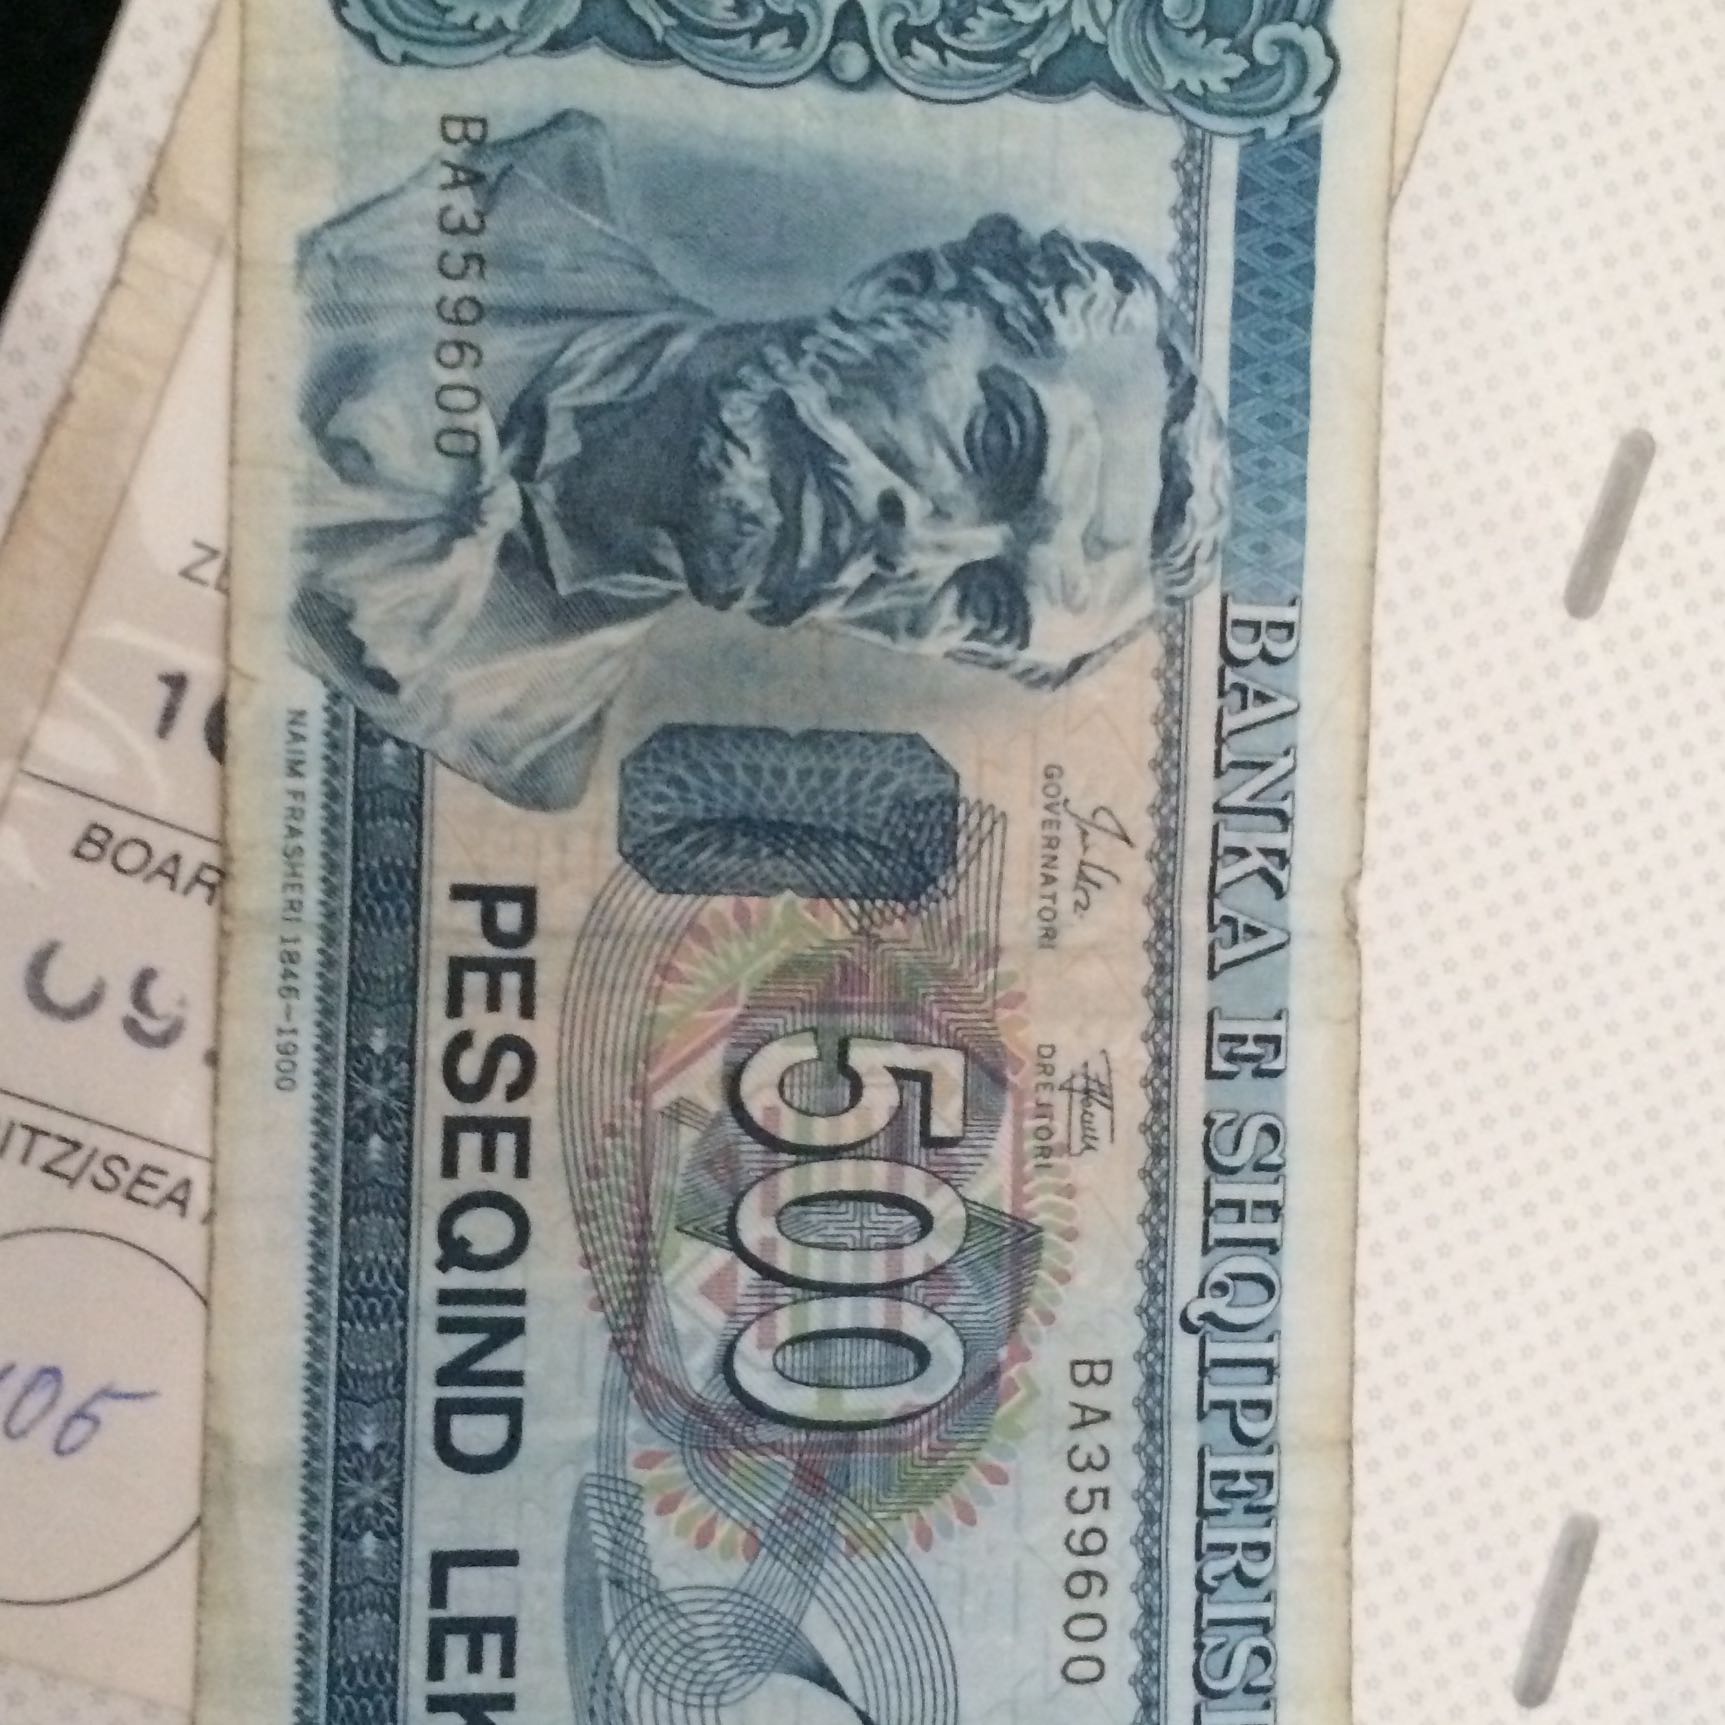 albanische geld währung